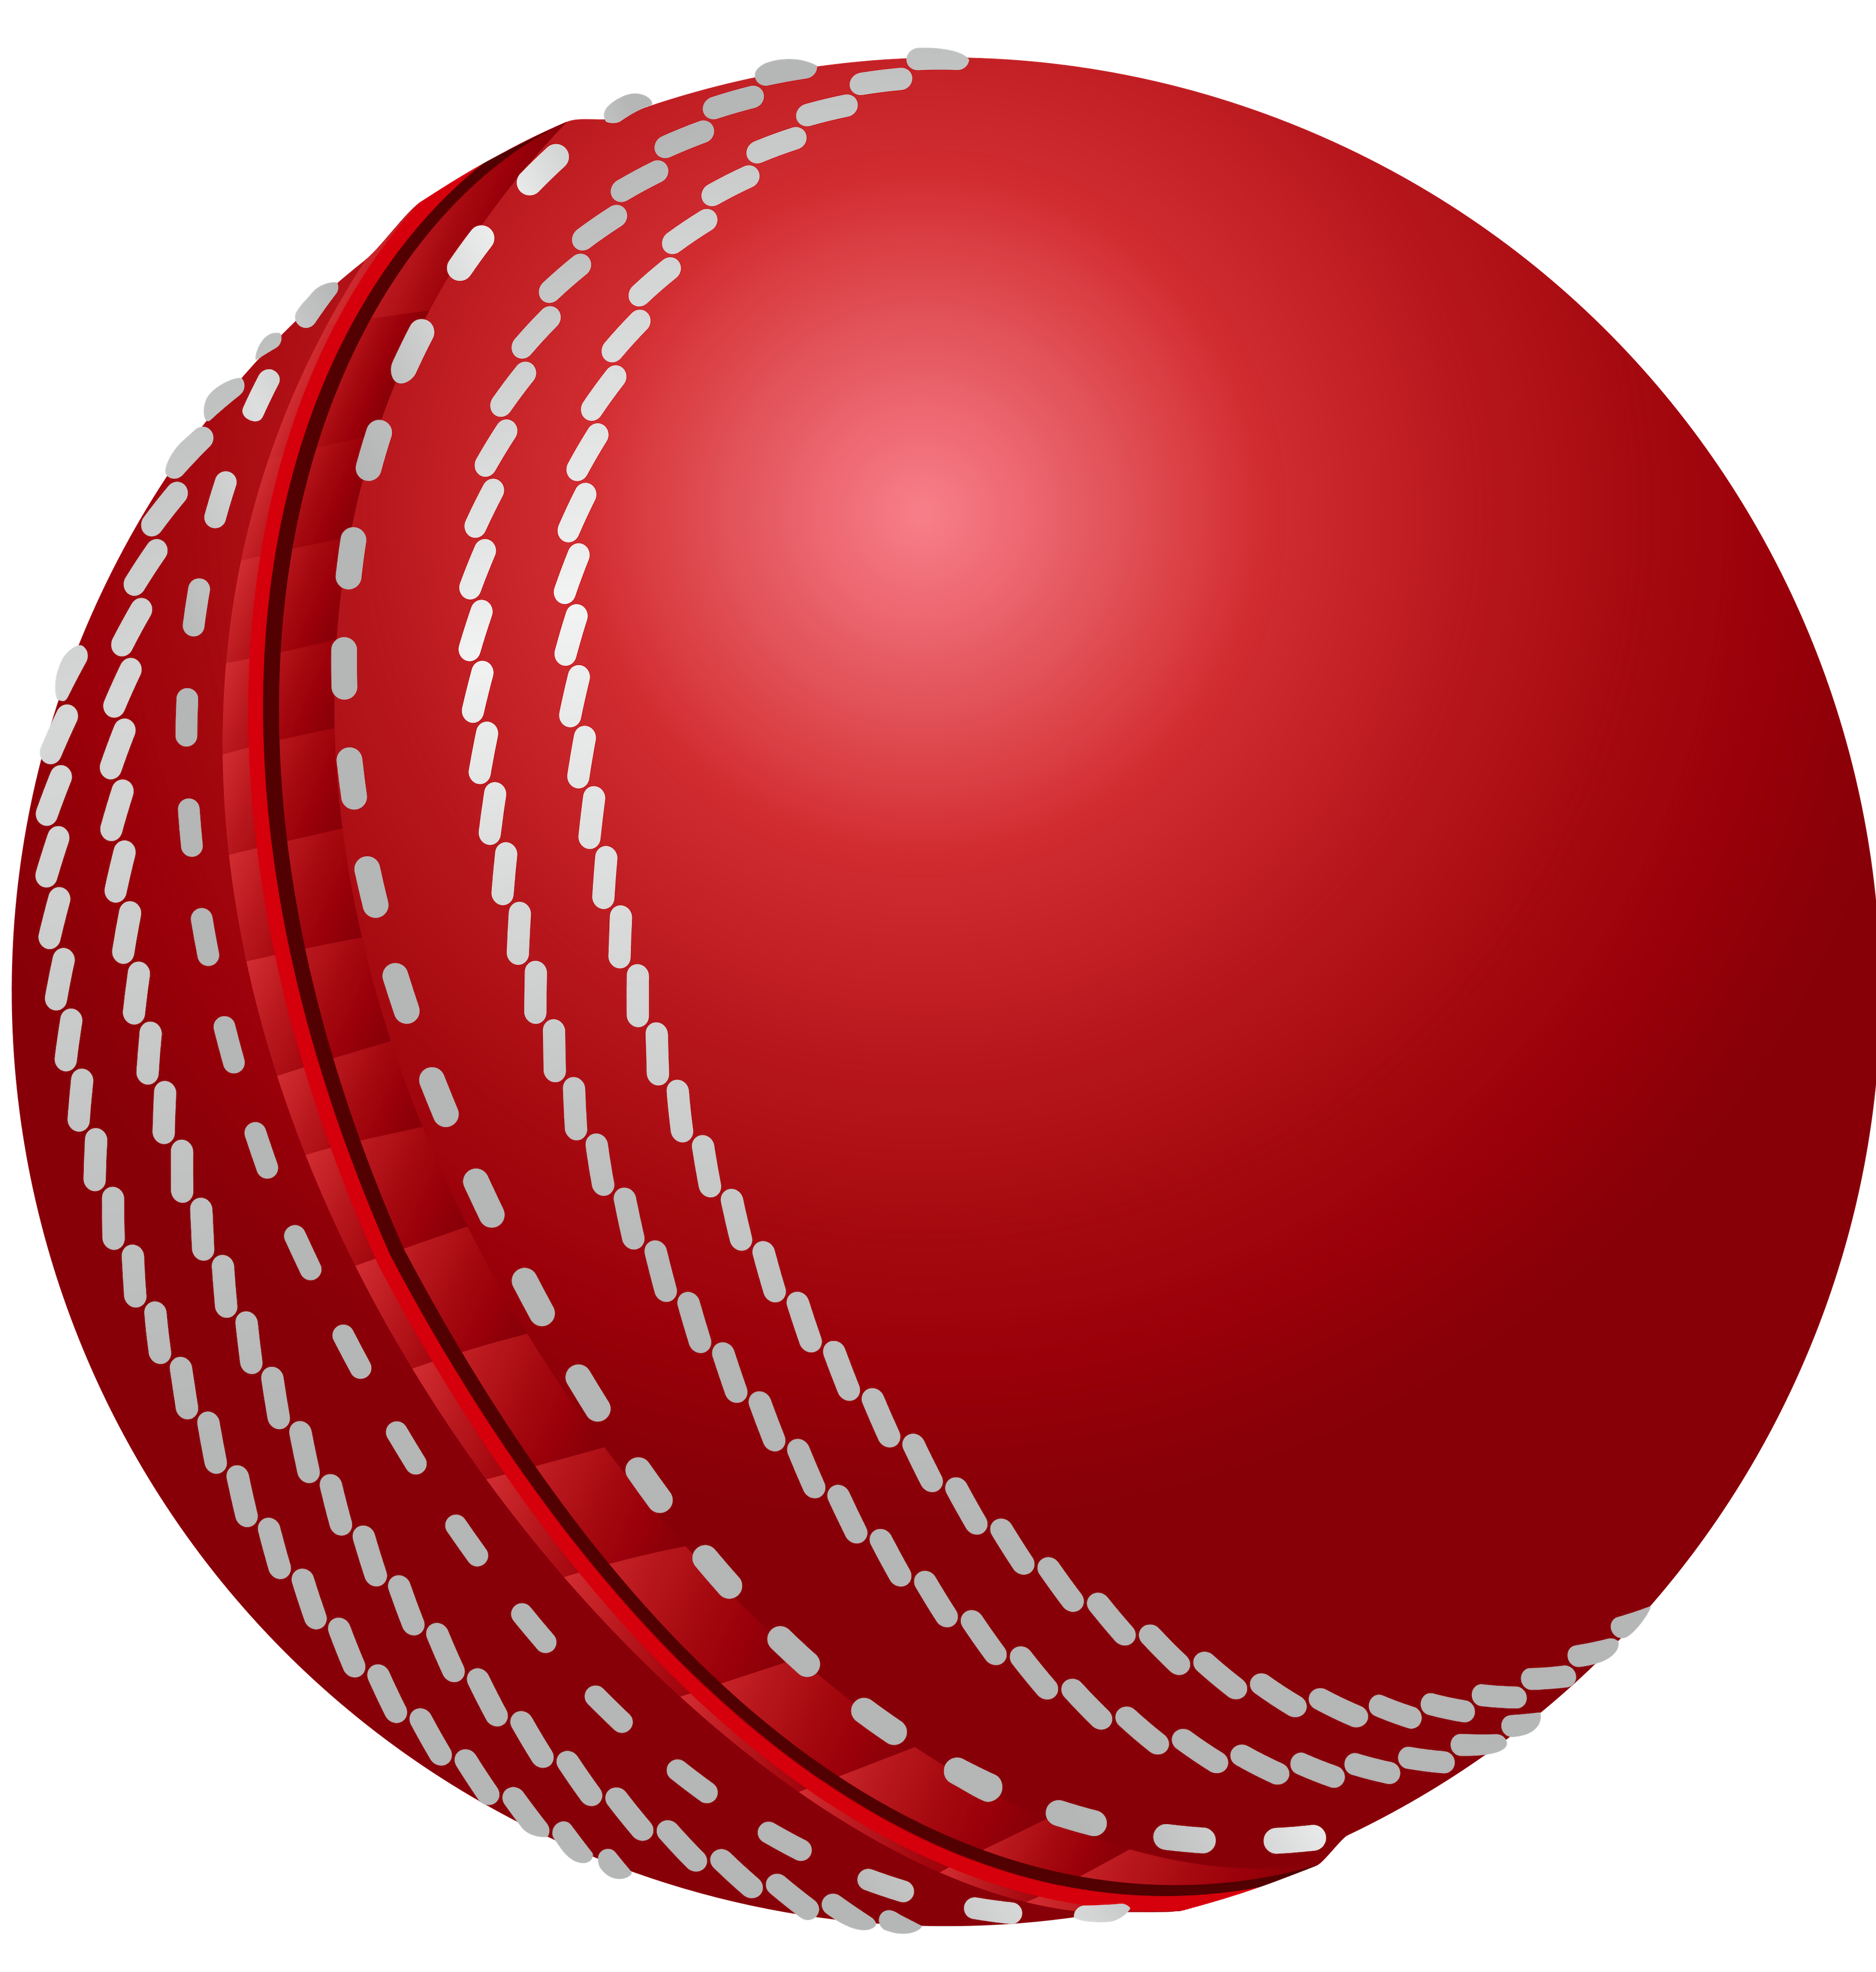 Cricket-Spiele